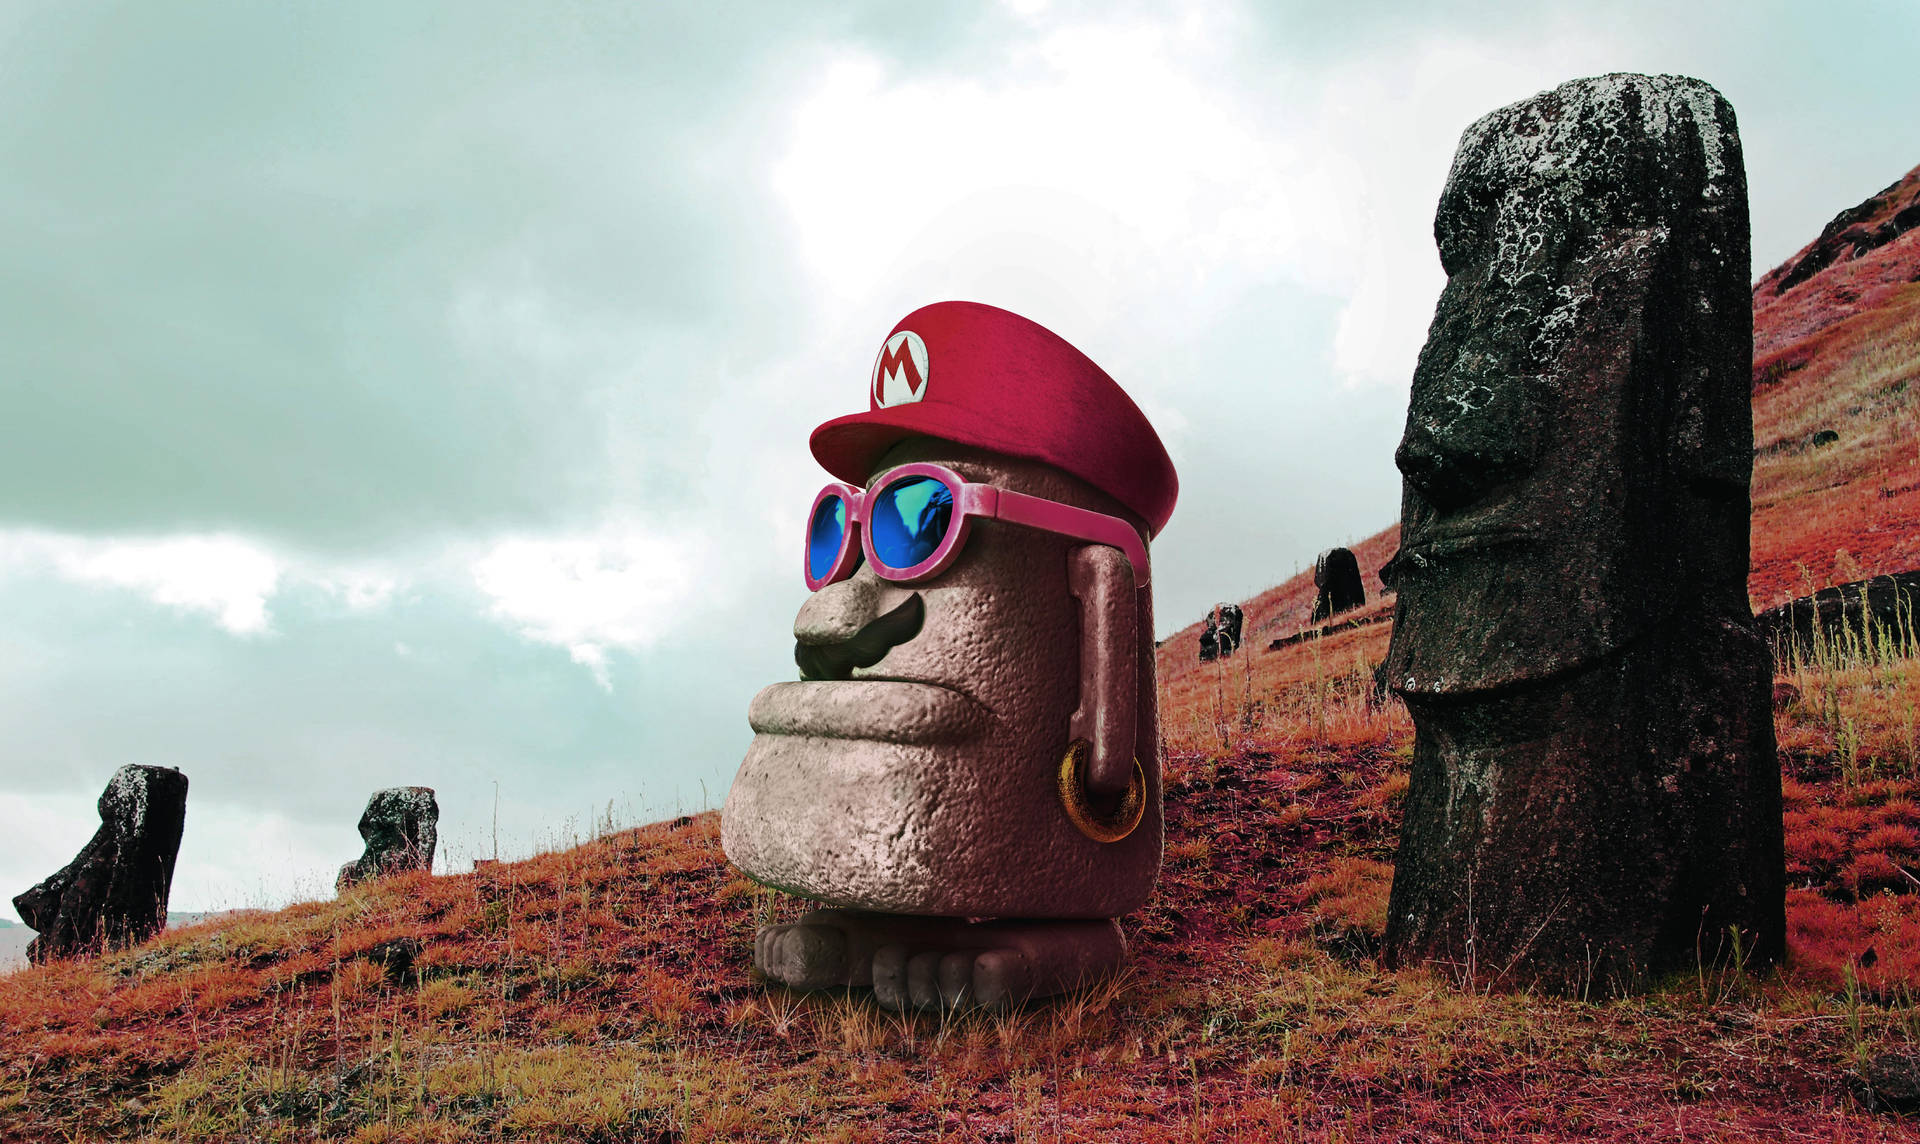 Super Mario Odyssey Adventure - Moai Statues Scene Wallpaper